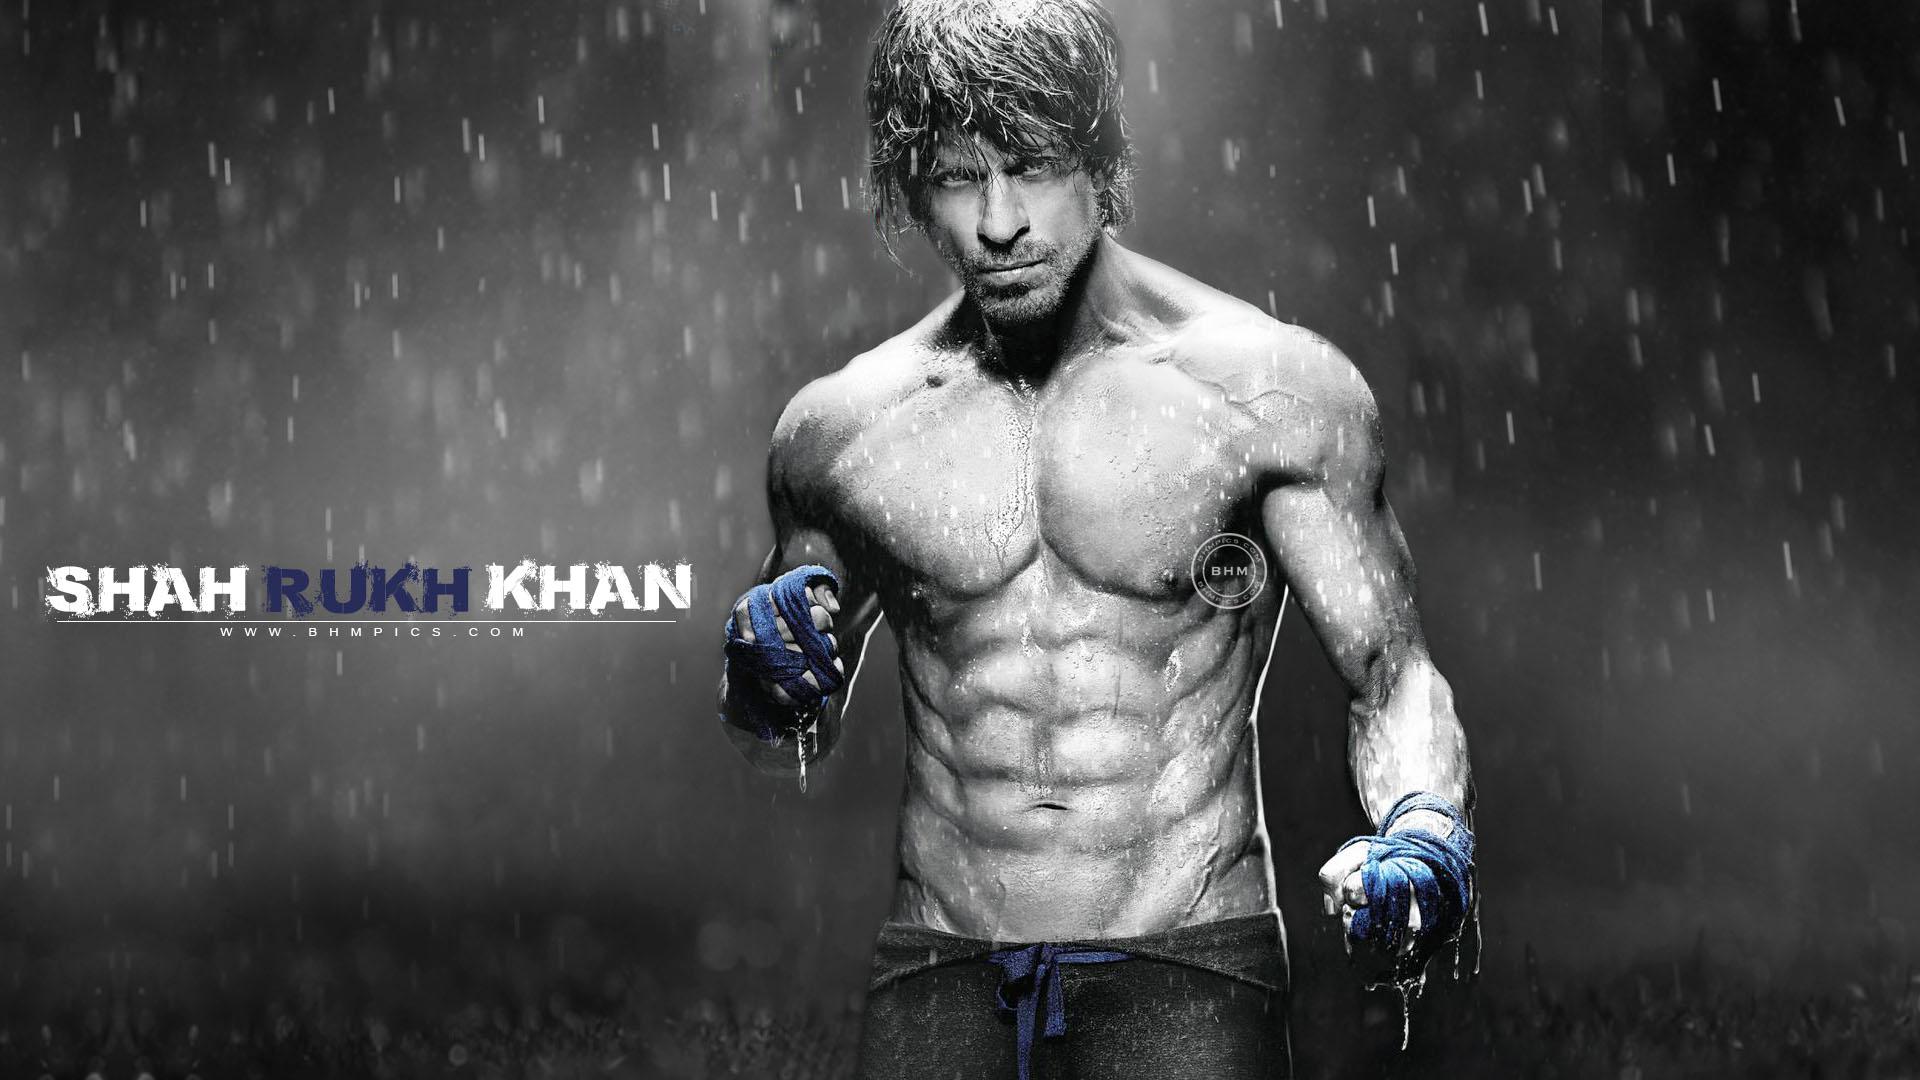 Shah Rukh Khan Eight Pack Abs wallpaper celebrities Wallpaper